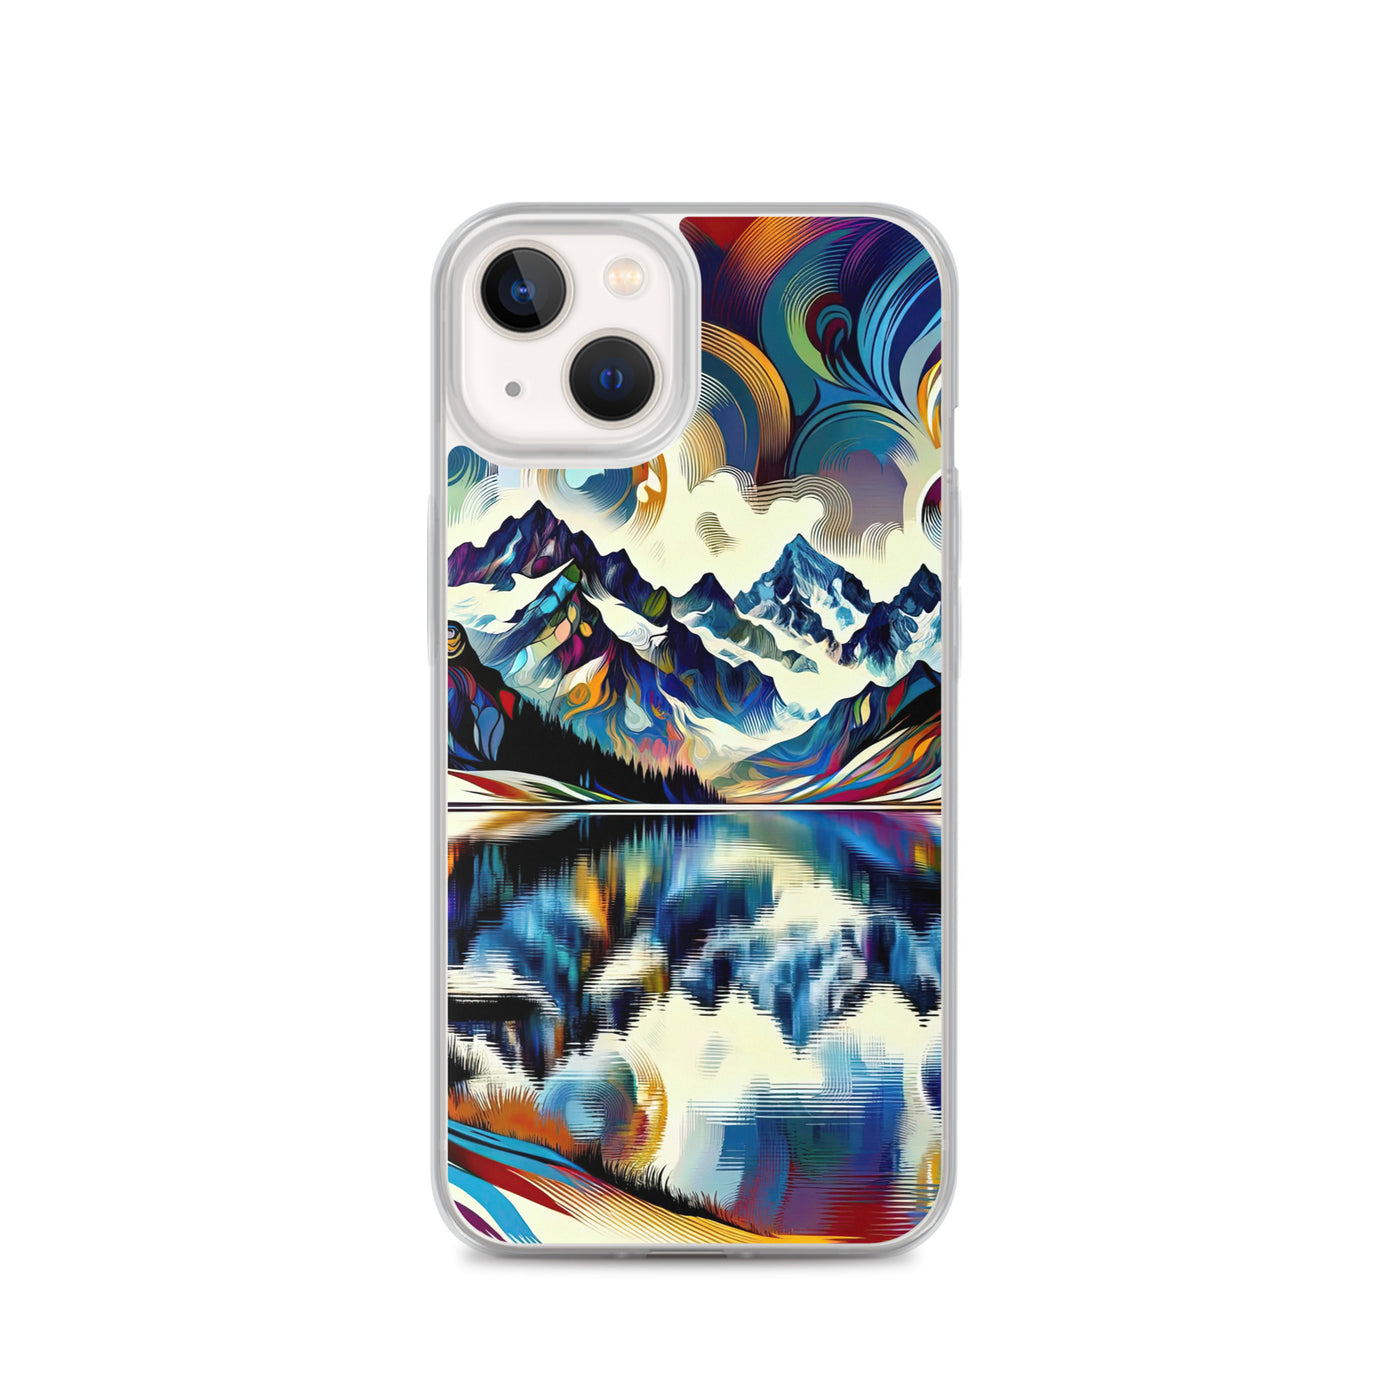 Alpensee im Zentrum eines abstrakt-expressionistischen Alpen-Kunstwerks - iPhone Schutzhülle (durchsichtig) berge xxx yyy zzz iPhone 13